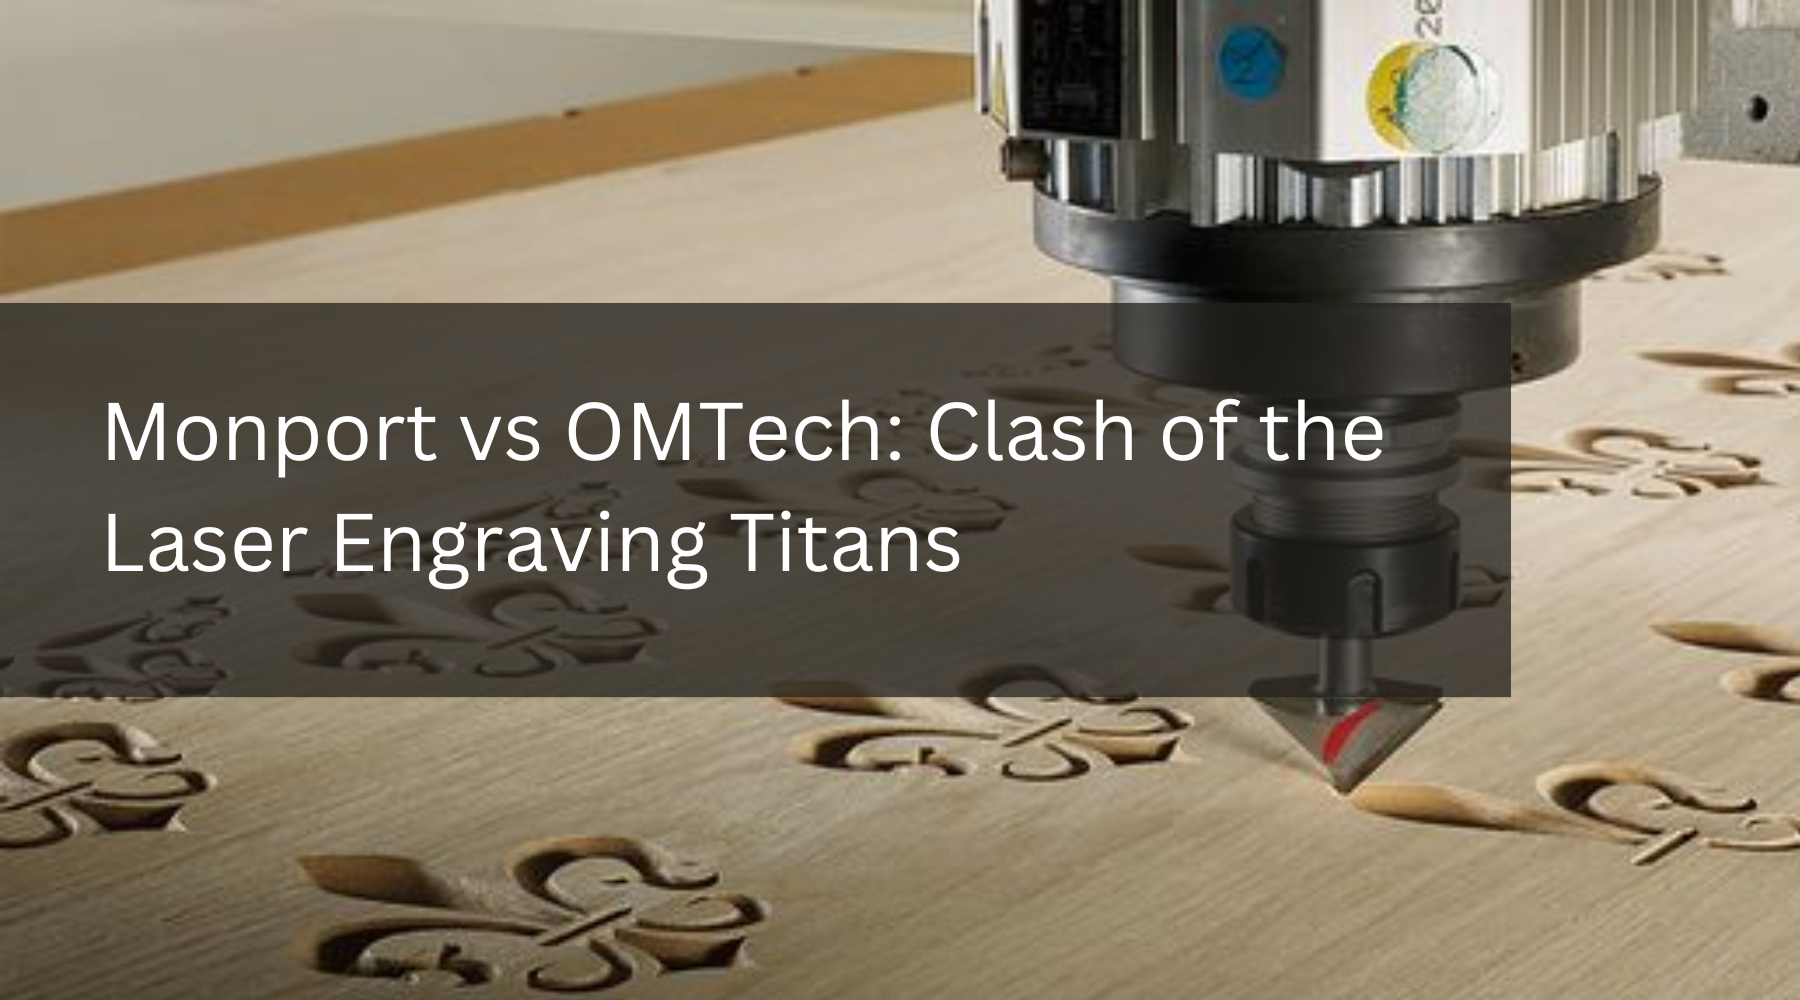 Monport vs OMTech: Clash of the Laser Engraving Titans